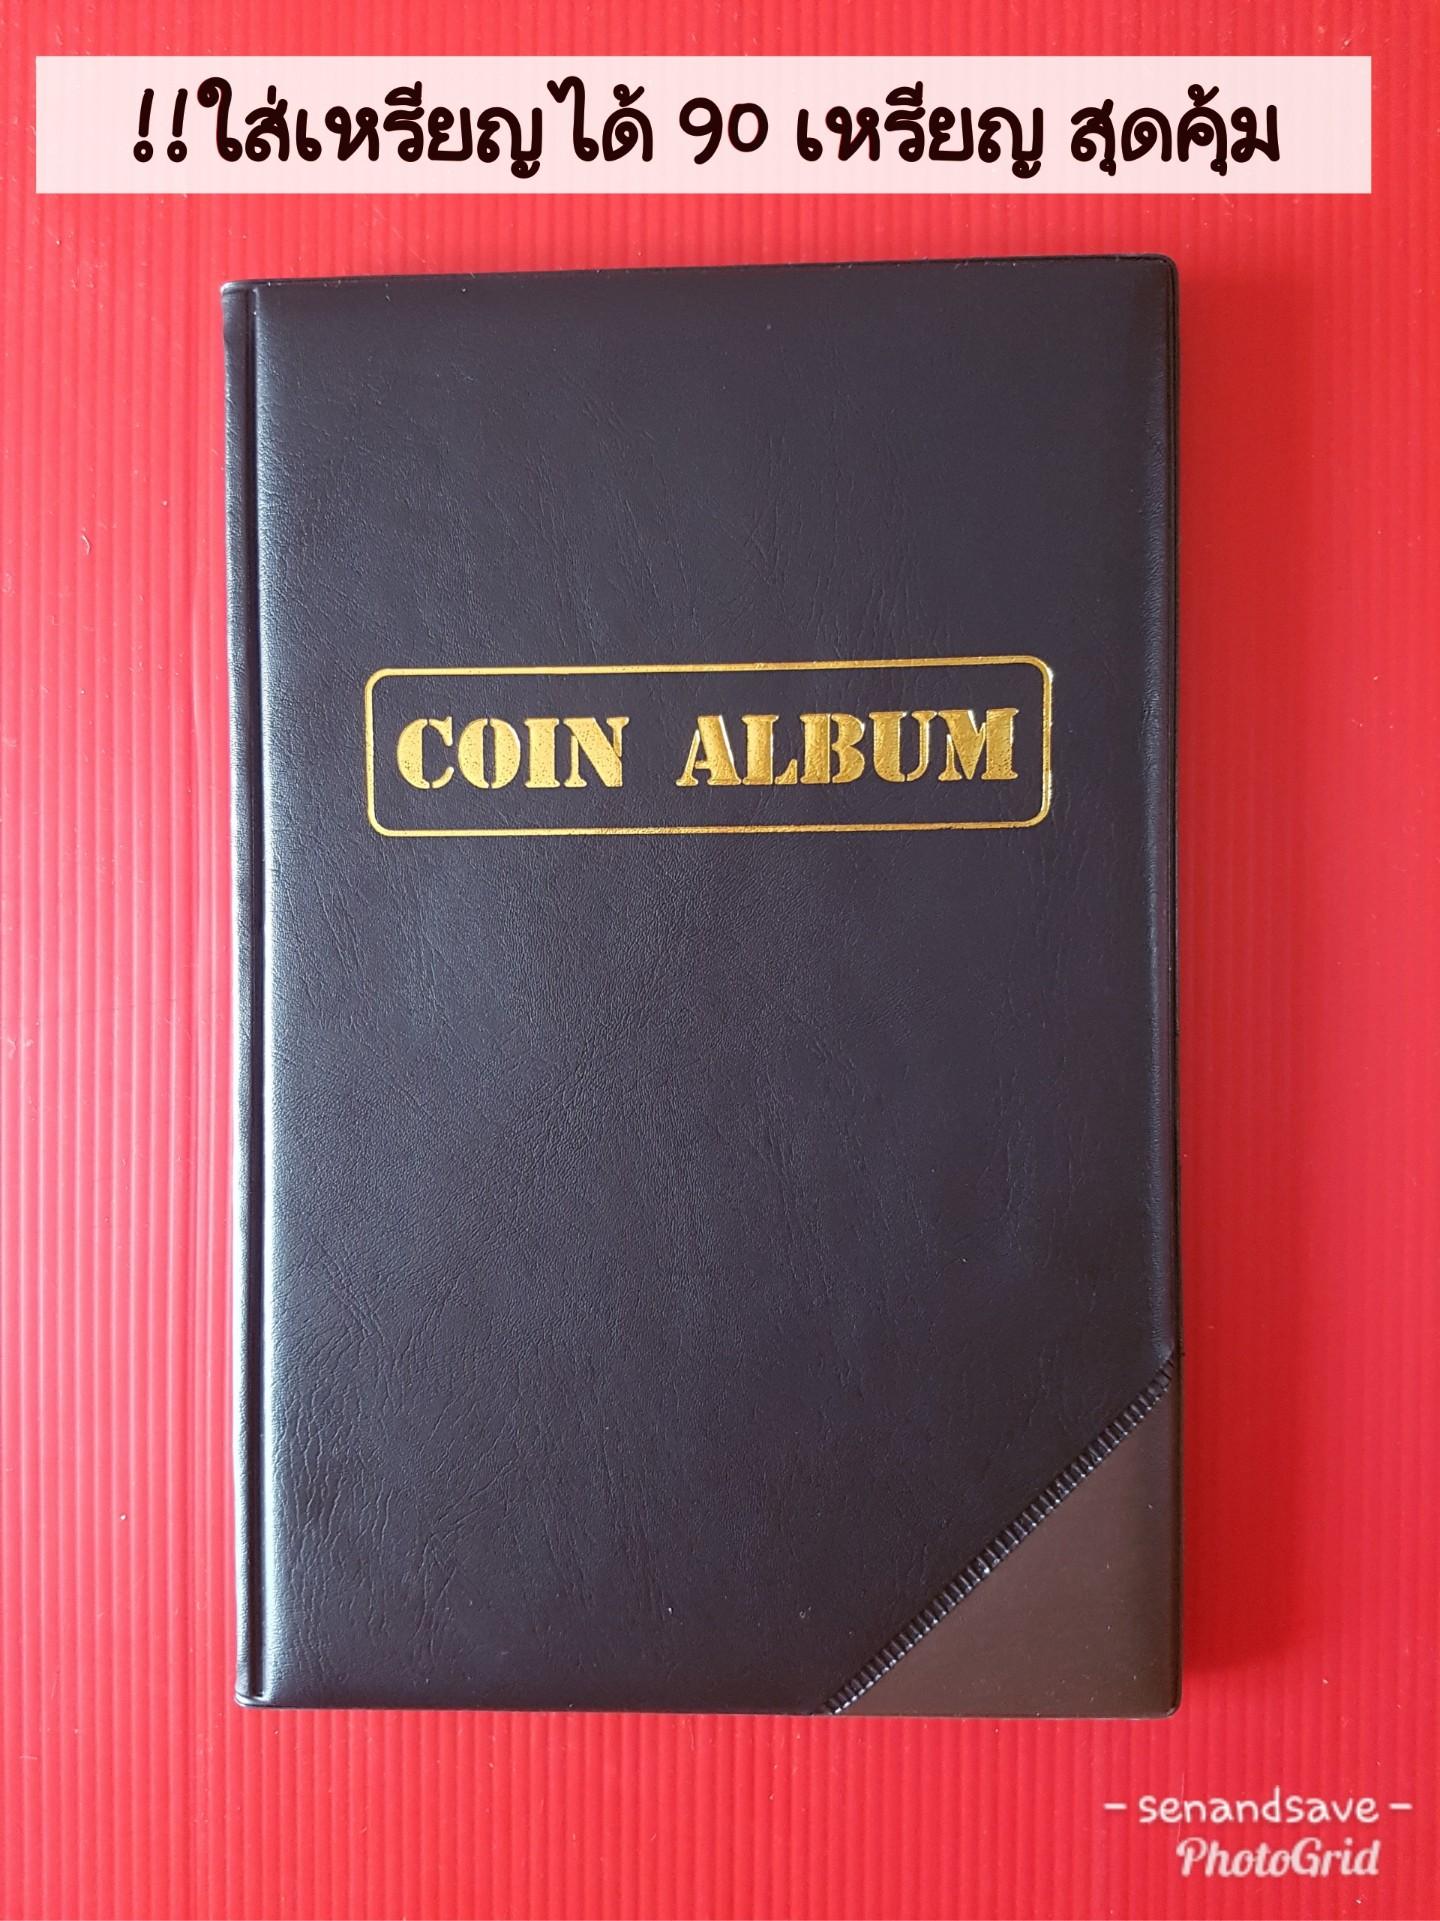 สมุดสะสมเหรียญ สมุดใส่เหรียญ Coin Album  ปกหนังอย่างดี ใส่ได้ 90 เหรียญ